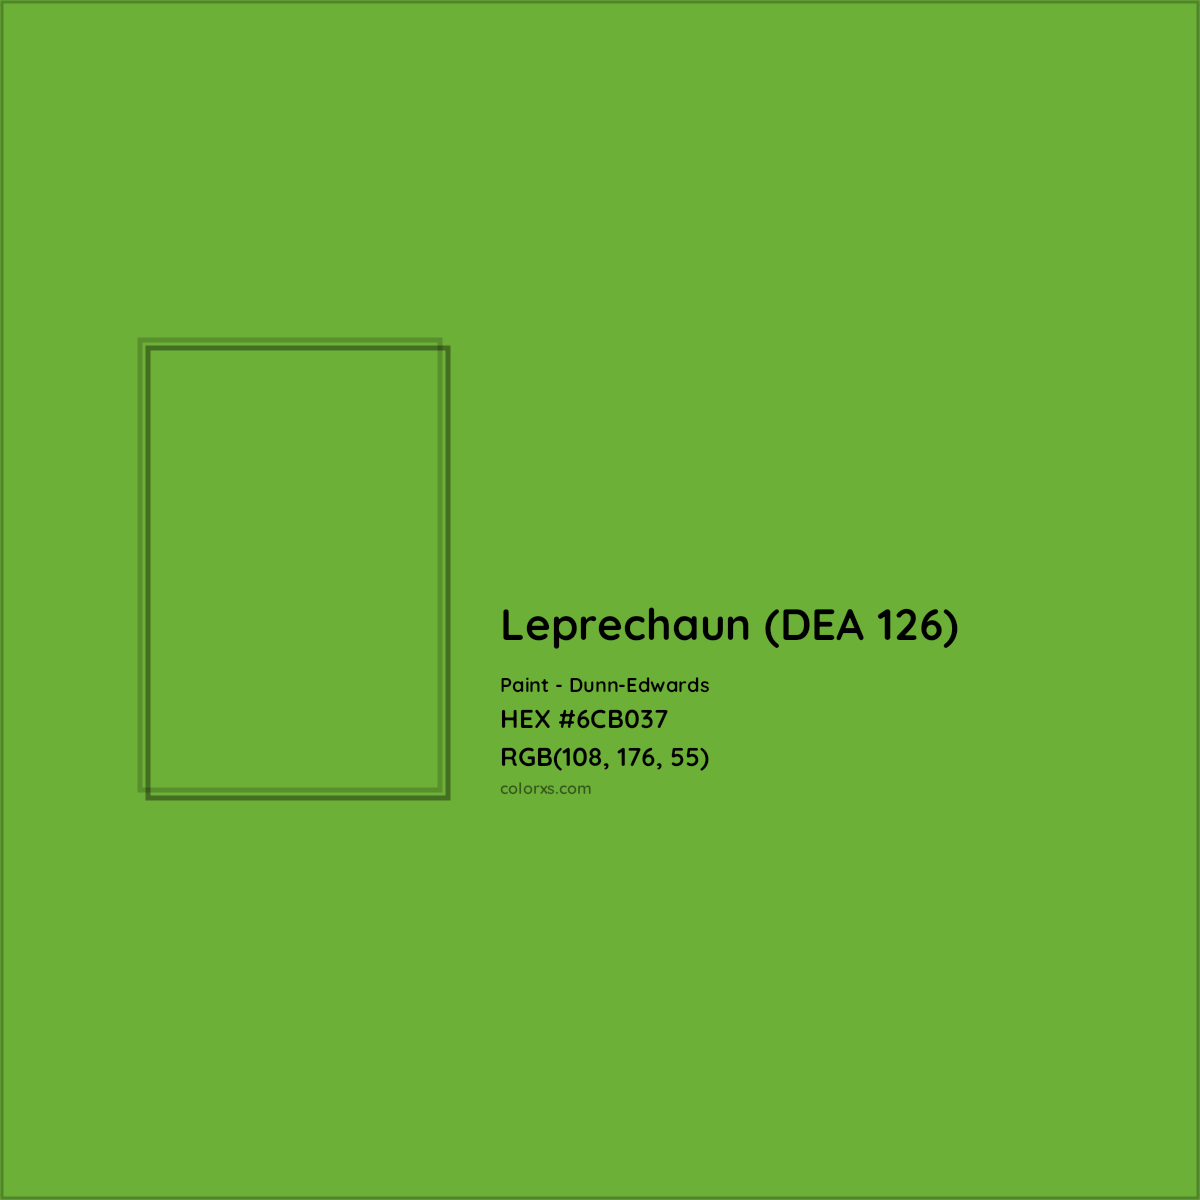 HEX #6CB037 Leprechaun (DEA 126) Paint Dunn-Edwards - Color Code